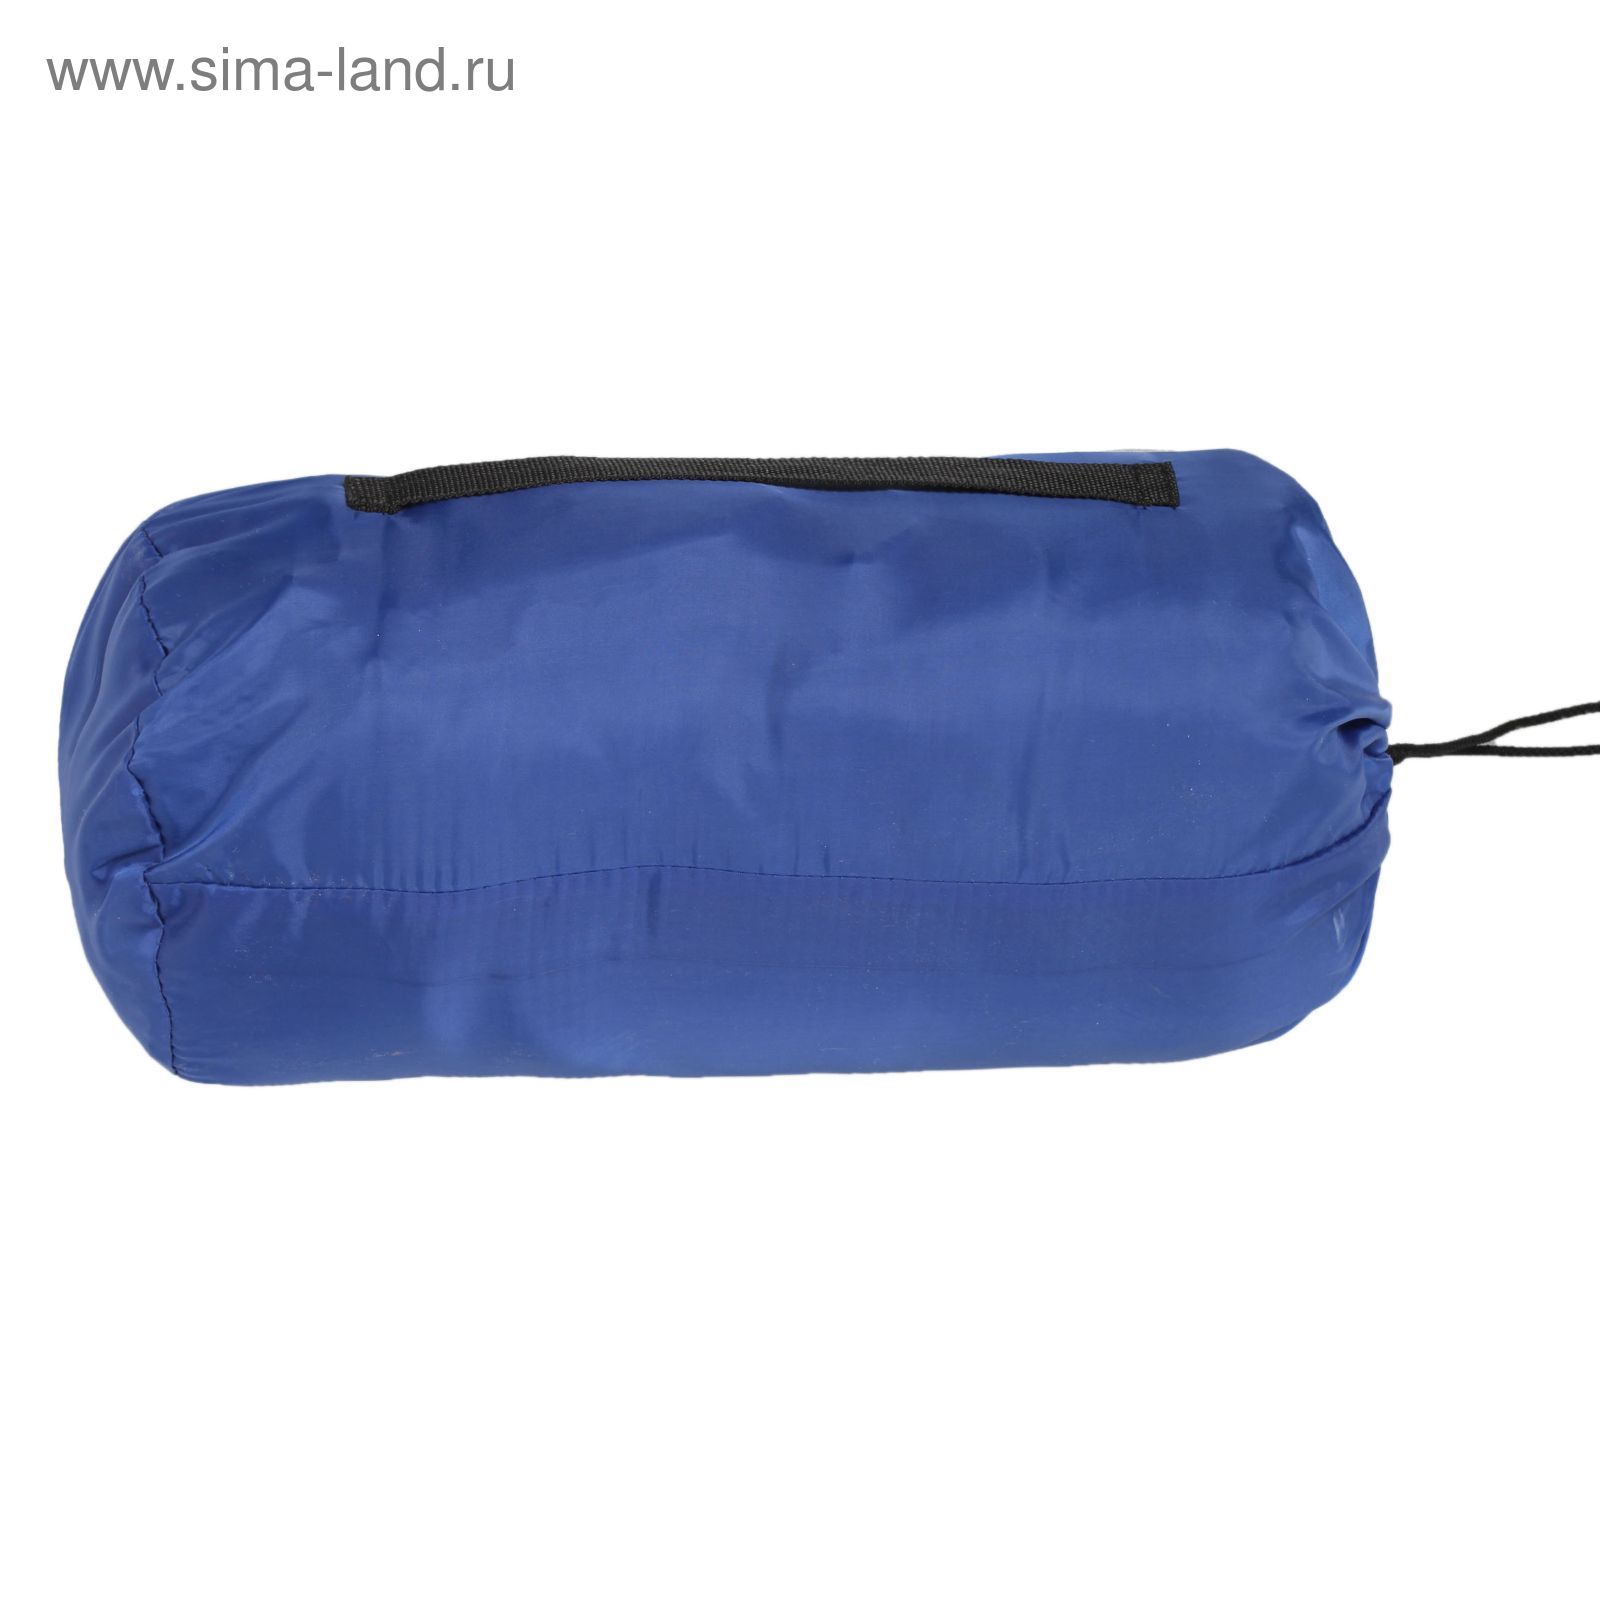 Спальный мешок-кокон, синтепон 180 , размер 210 х 70 см